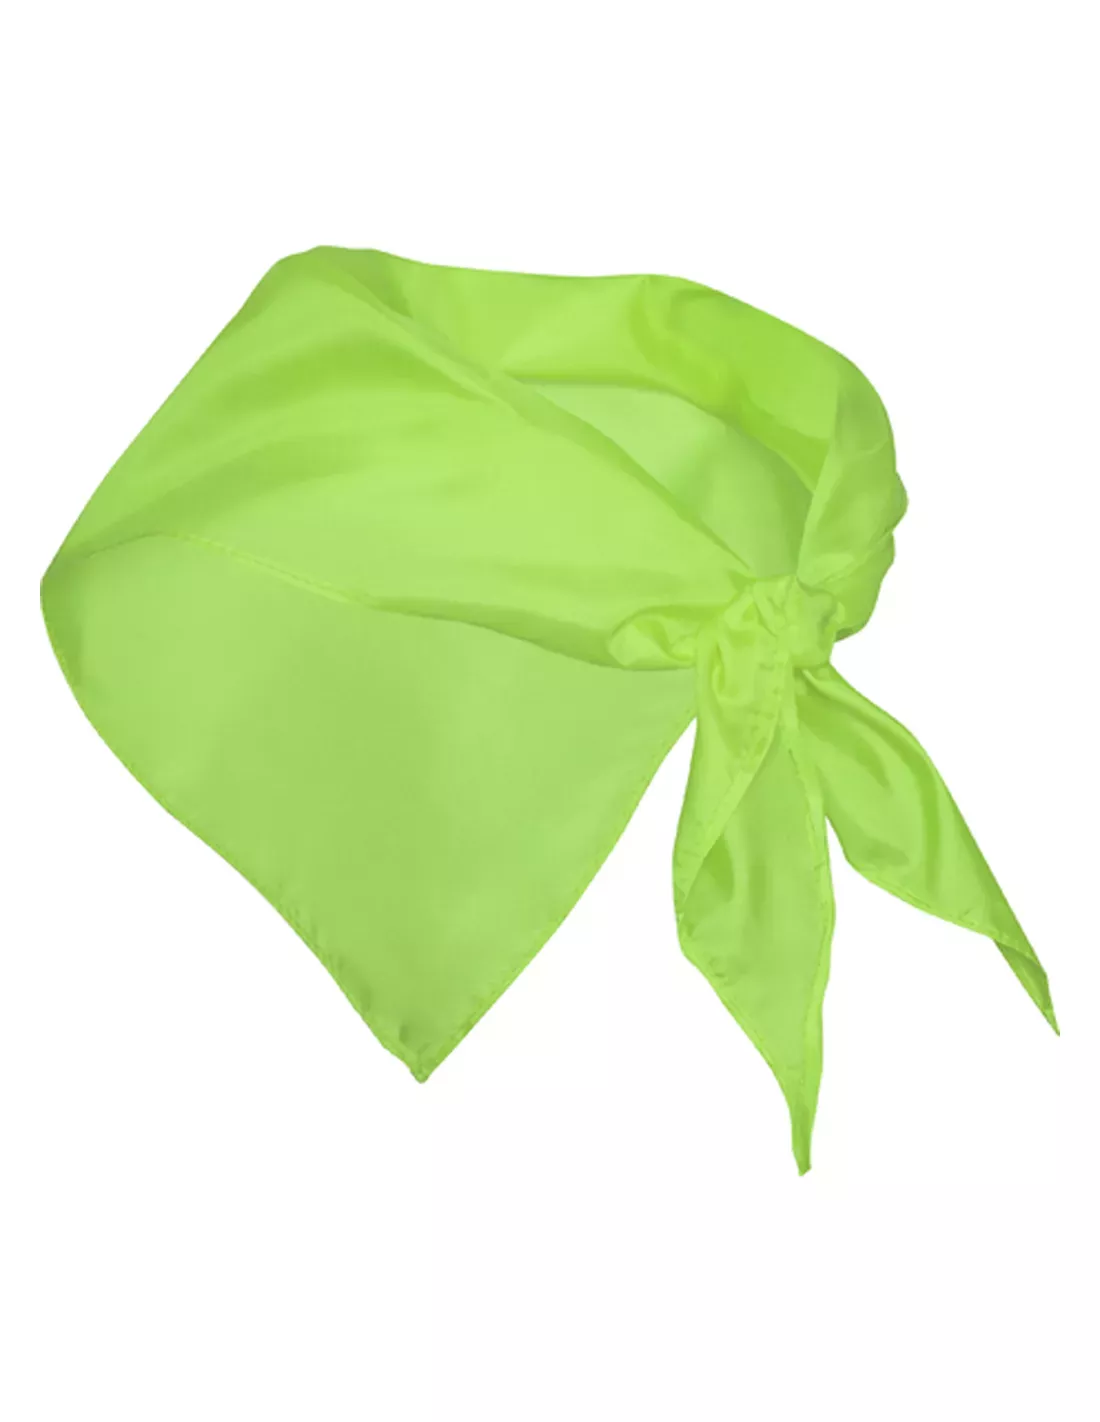 Pañuelo Triangular Personalizado de color verde lima para estar el logo de tu empresa